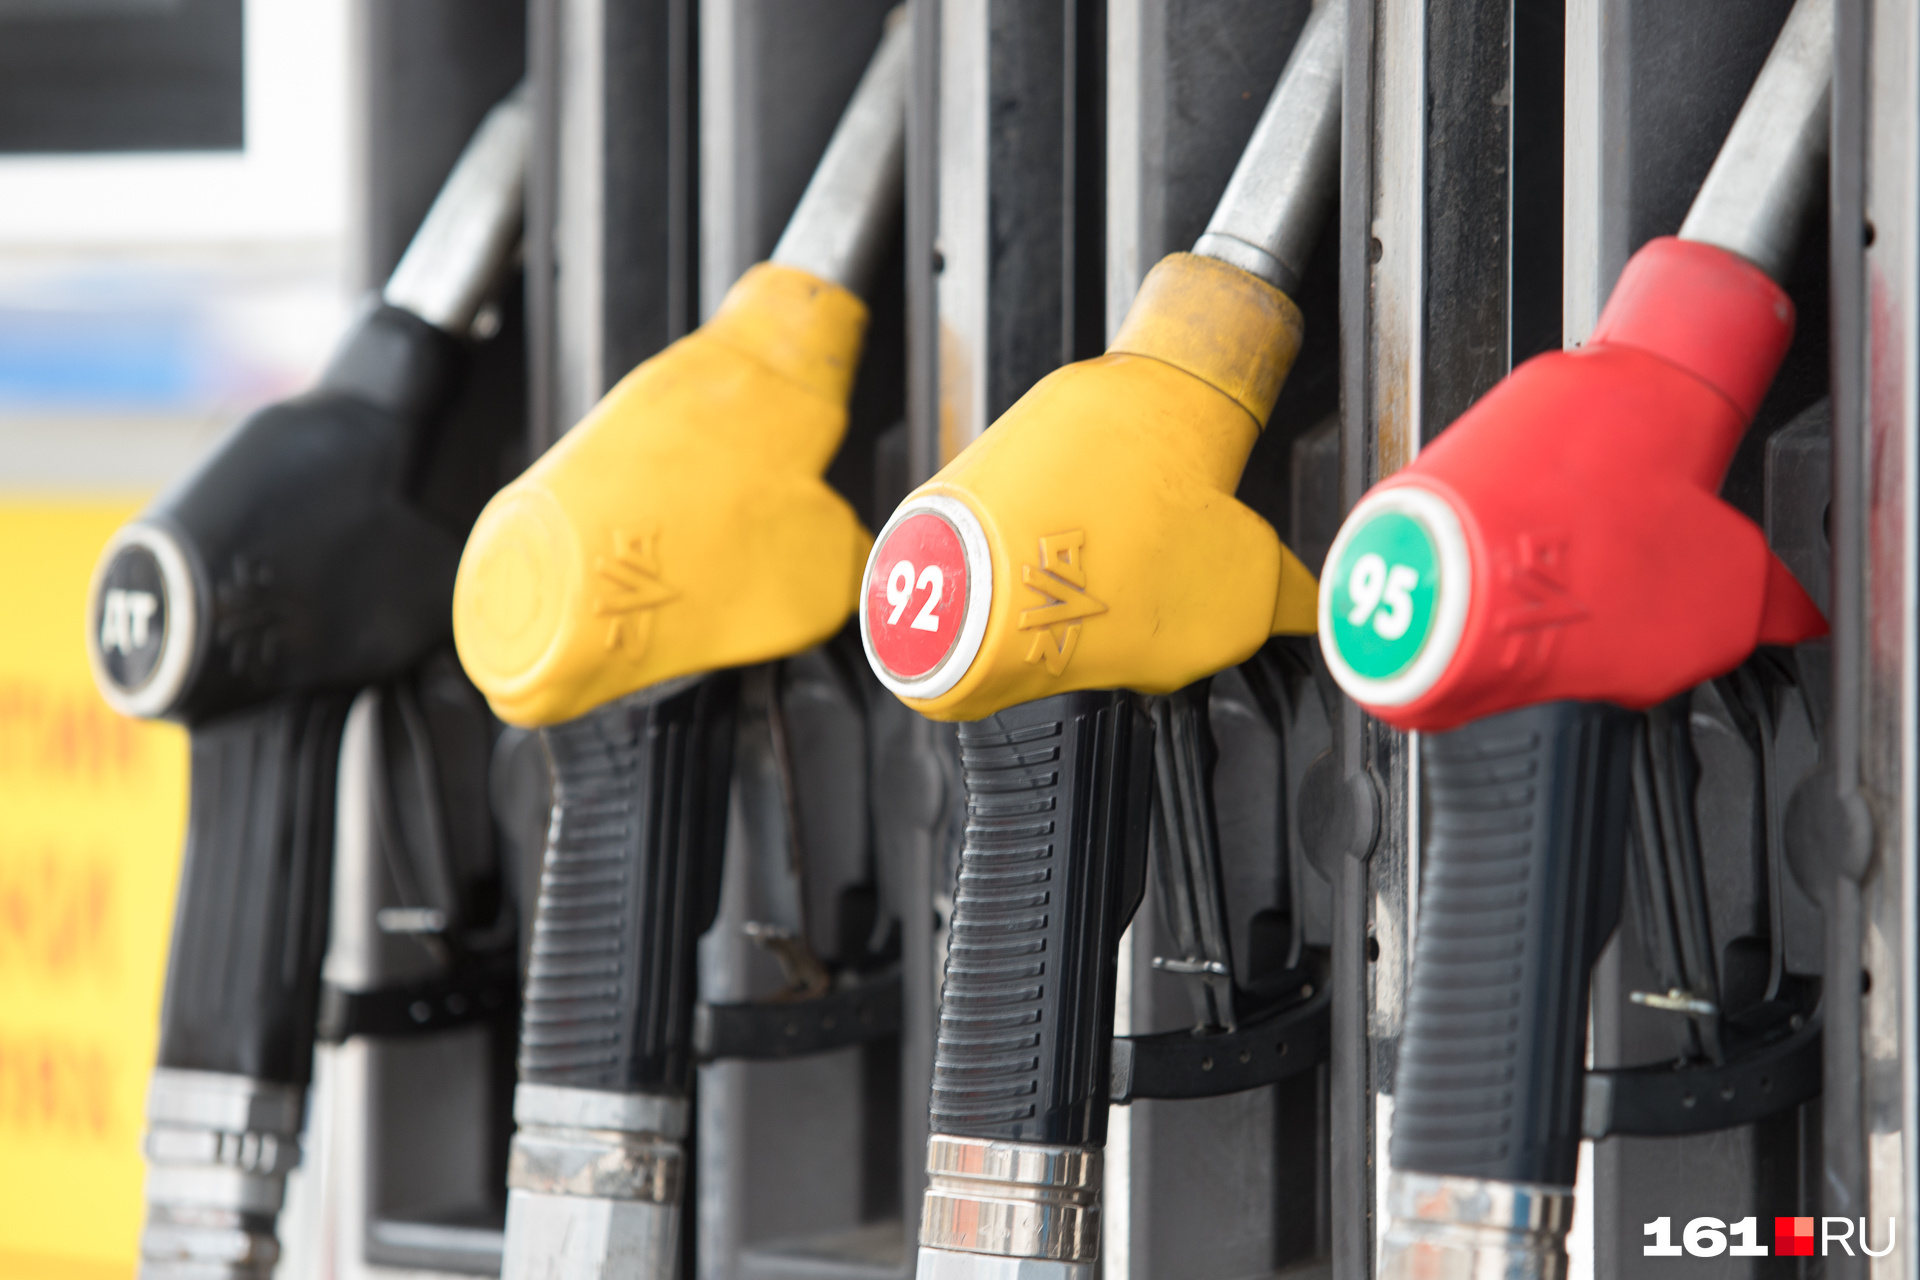 Забайкалье стало одним из регионов с самыми дорогими бензином и дизелем